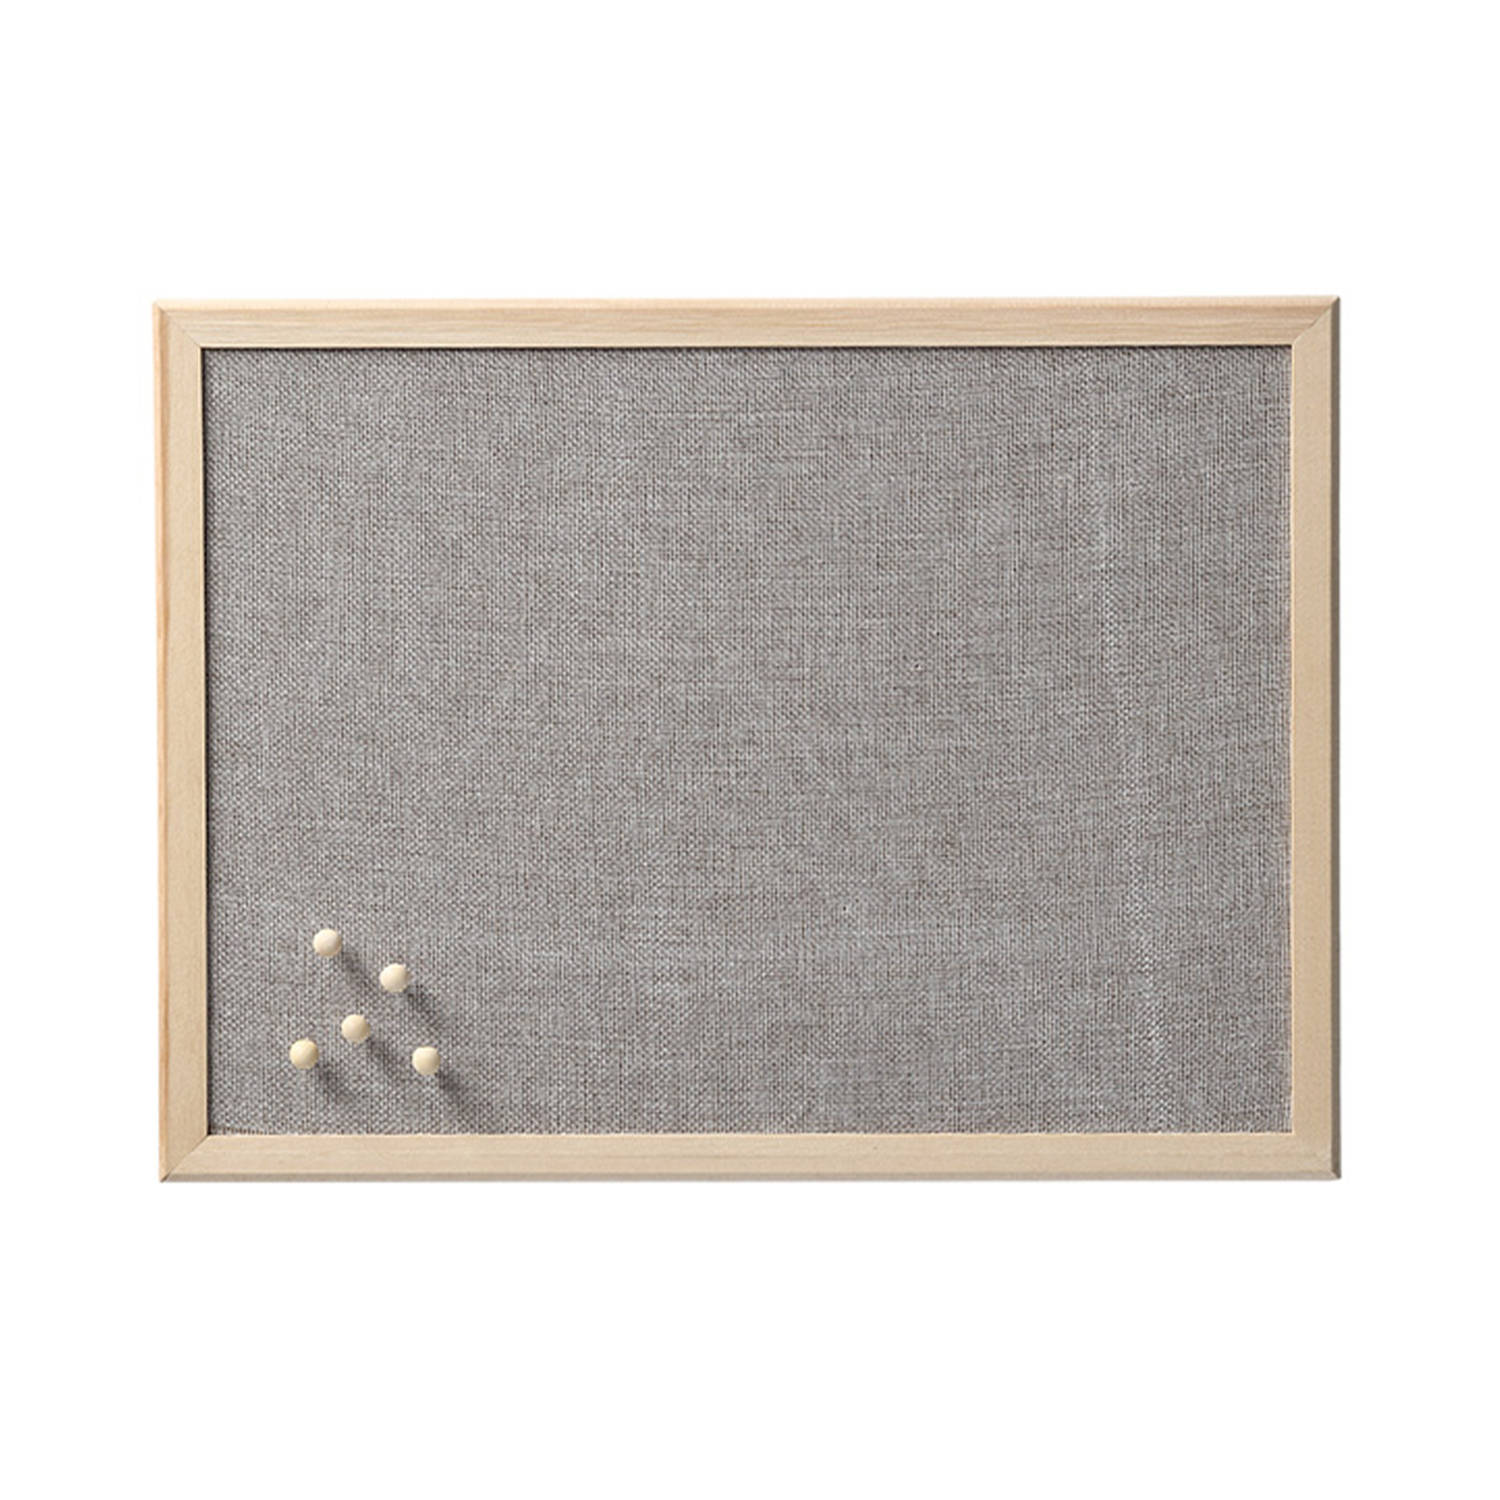 Prikbord textiel lichtgrijs 30 x 40 cm incl. punaises luxe Prikborden